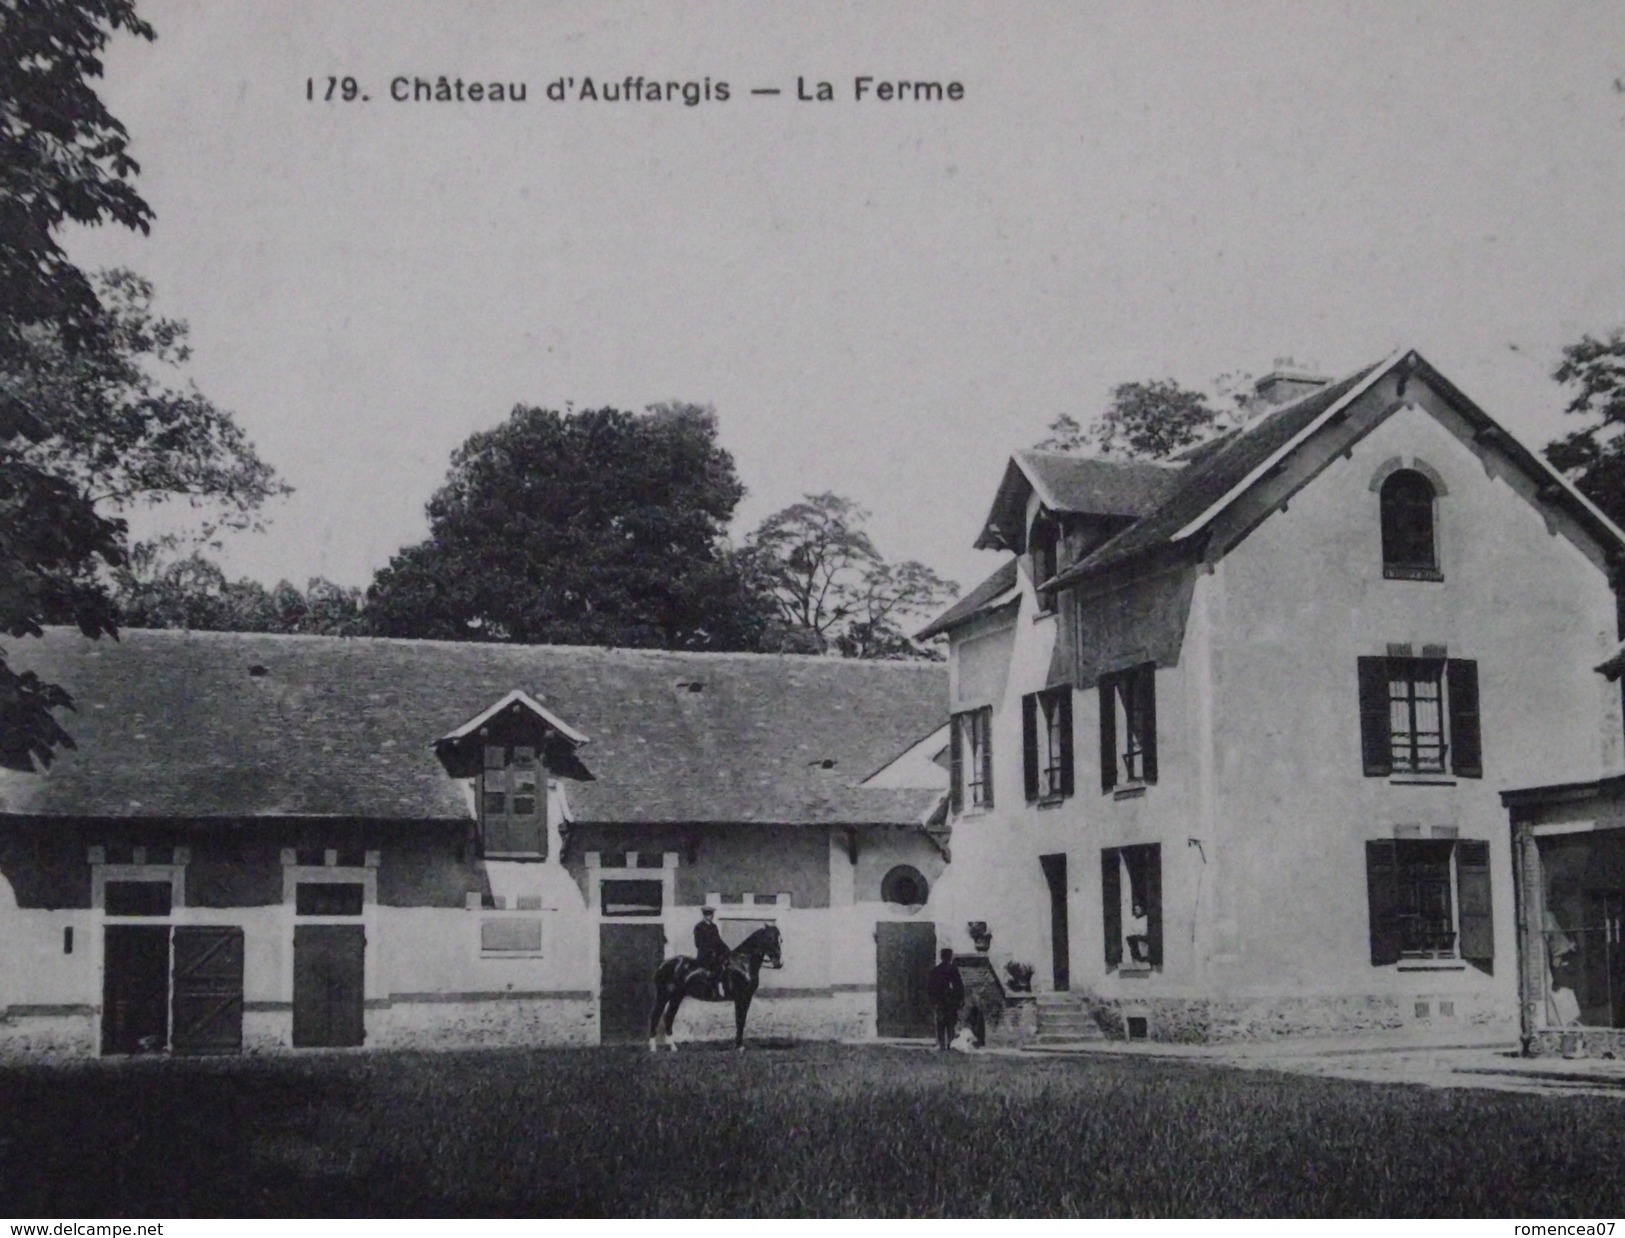 CHÂTEAU D'AUFFARGIS (Yvelines) - La FERME - Cavalier - Animée - Voyagée Le 22 Septembre 1916 - Auffargis